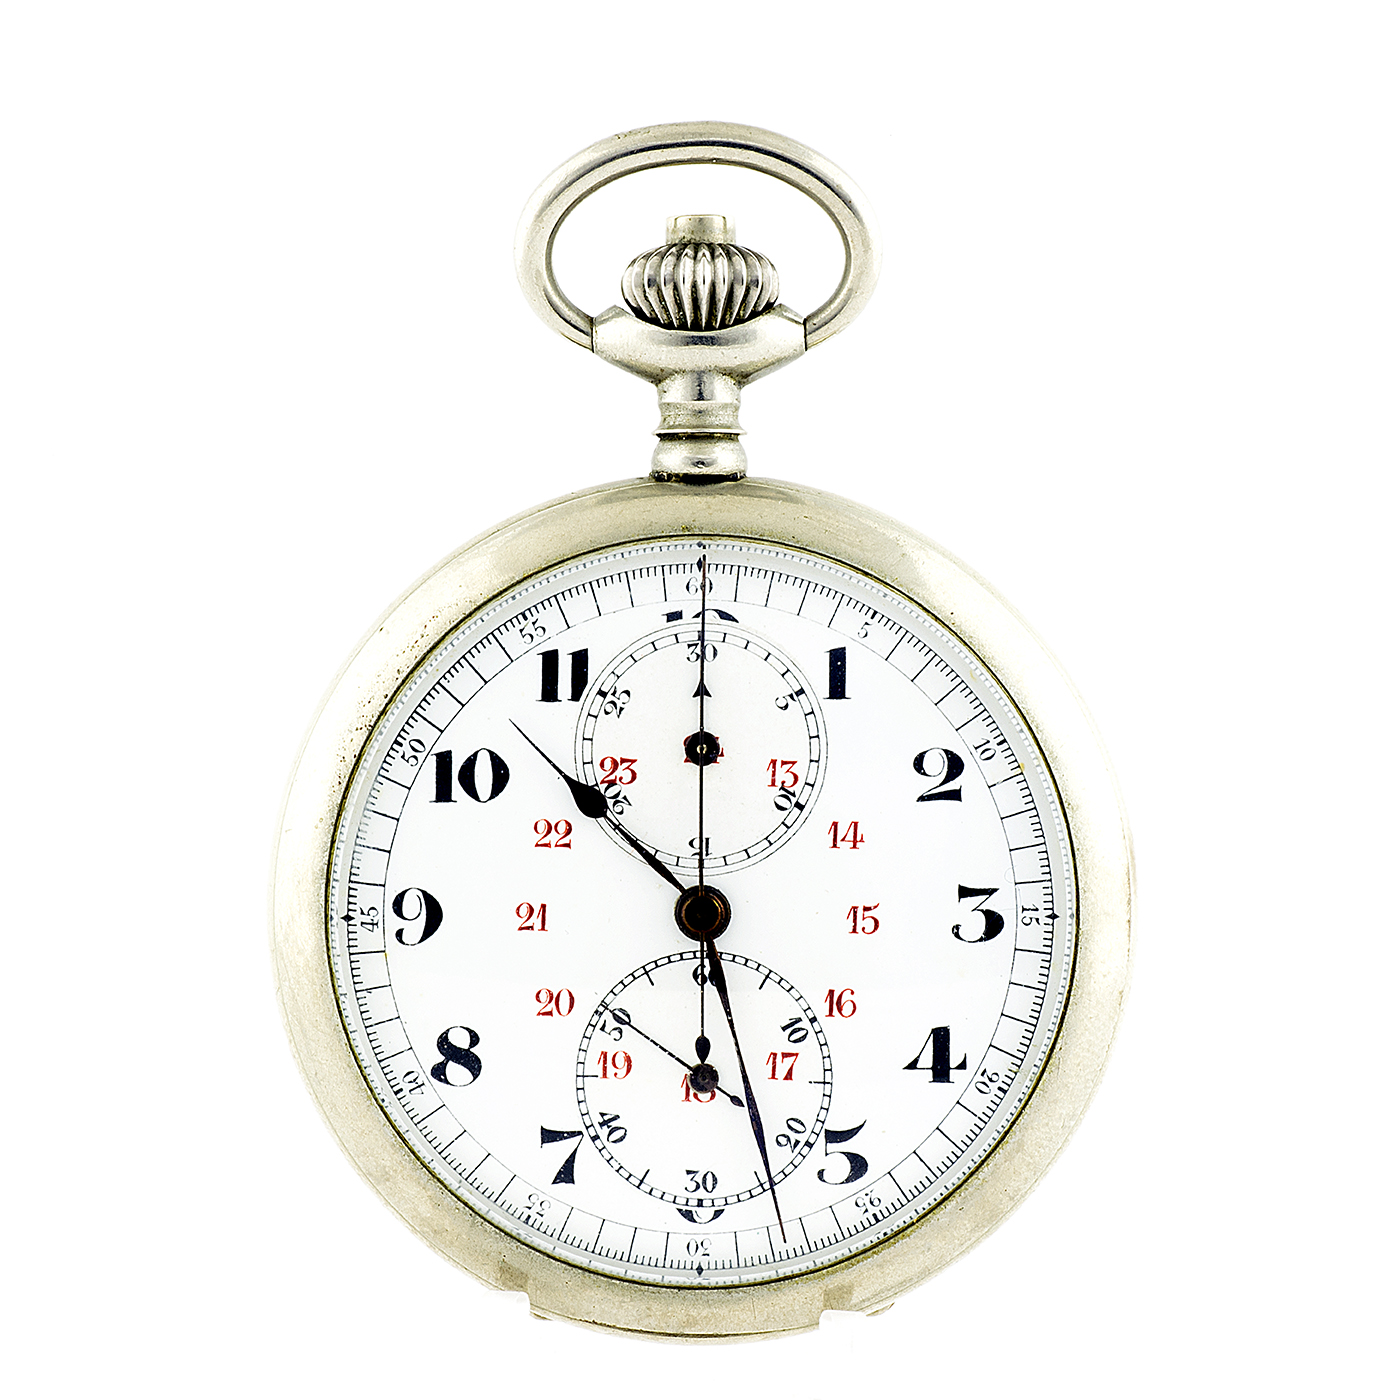 Reloj-Cronómetro Suizo, Lepine y remontoir. Suiza, ca. 1900.